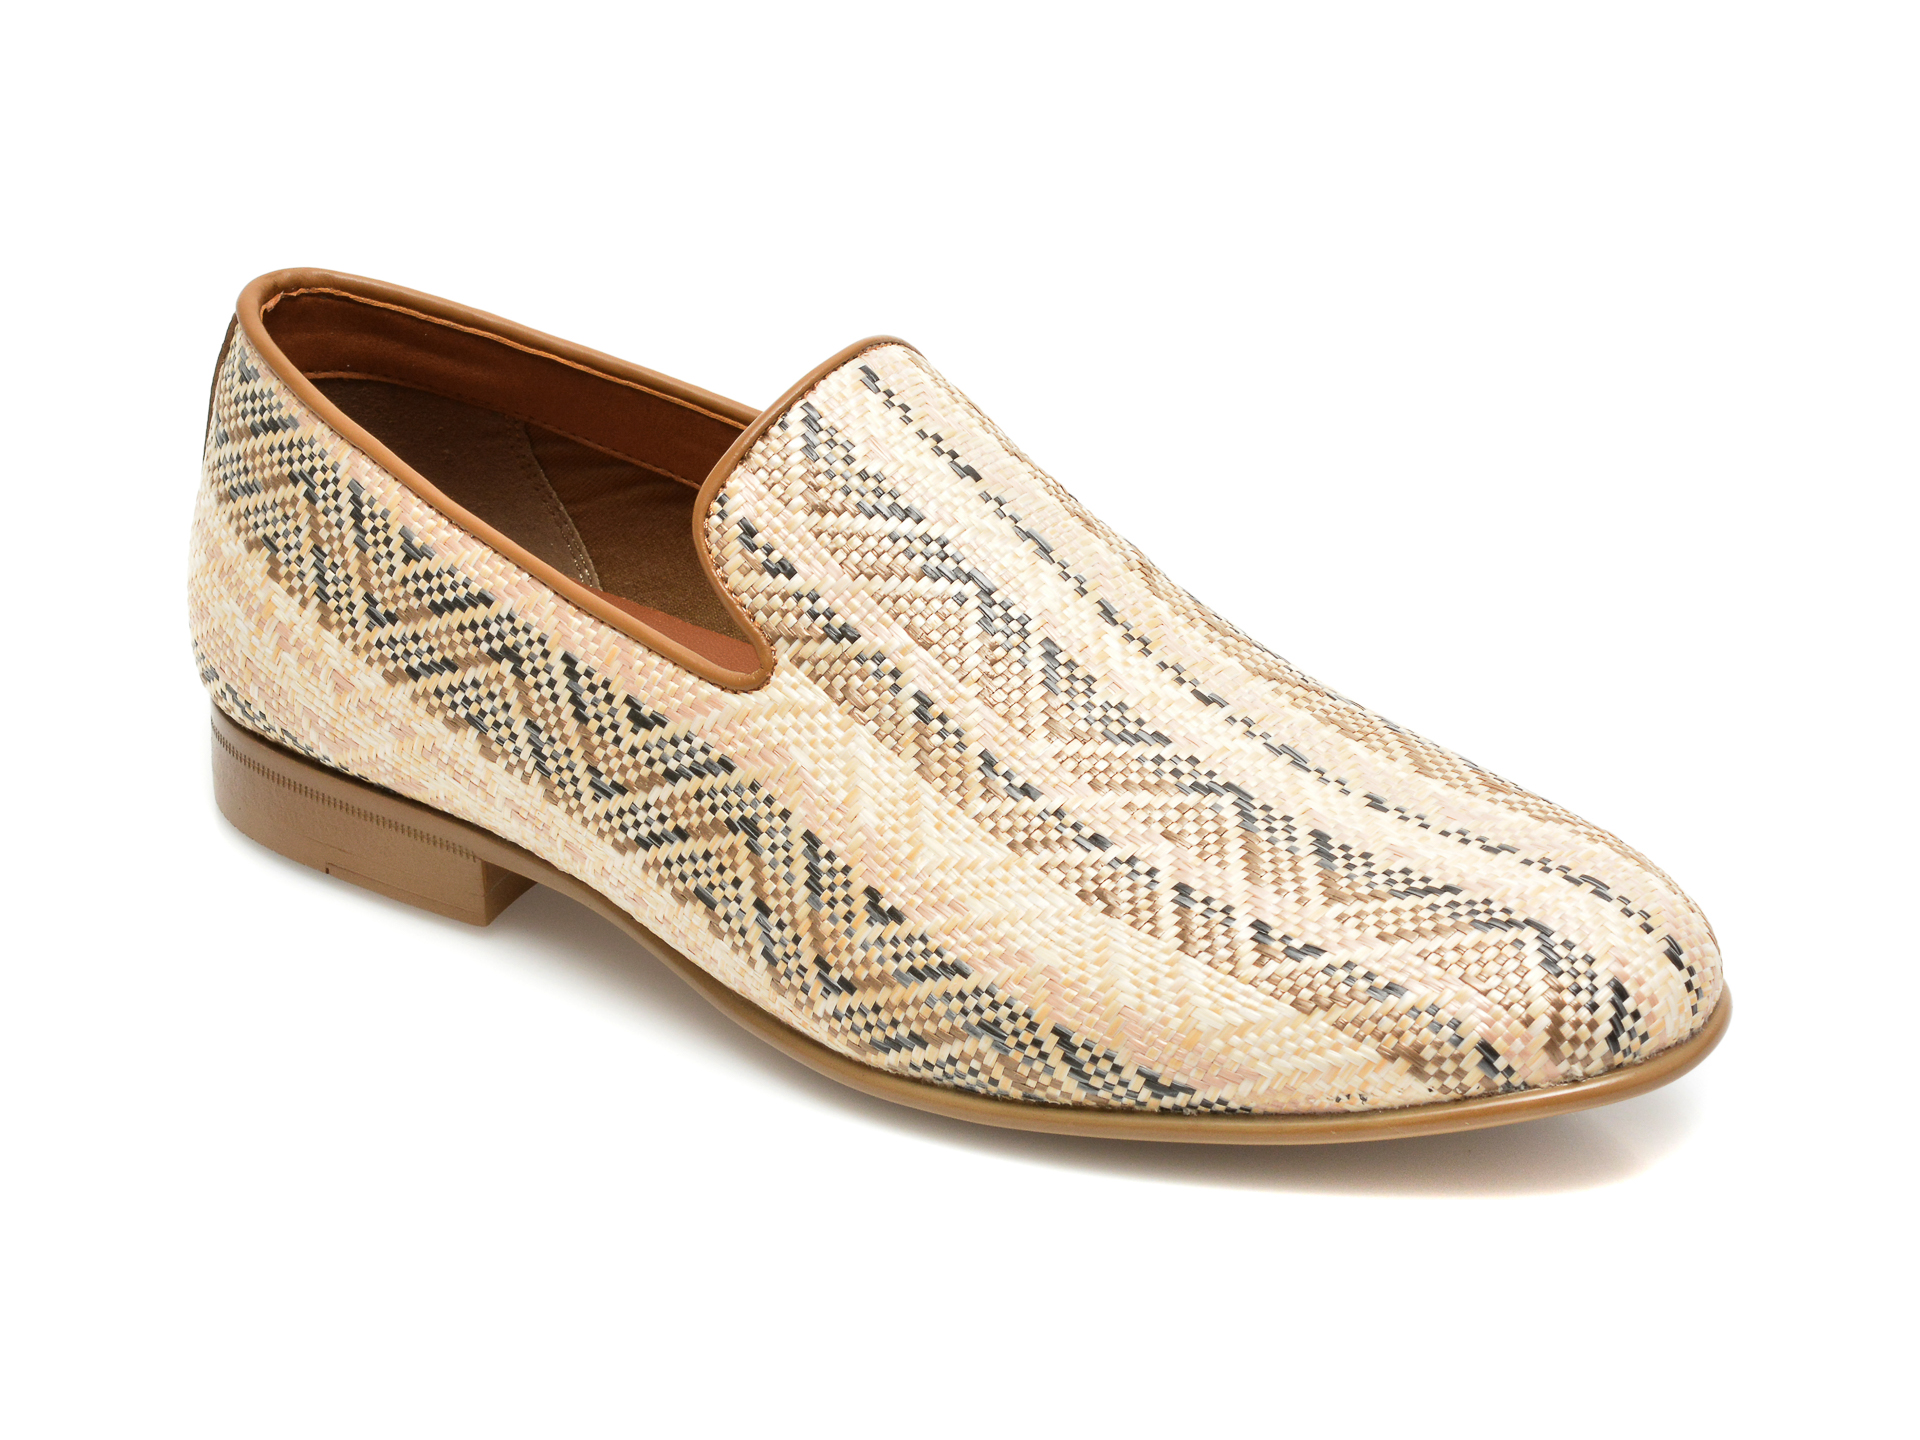 Pantofi ALDO bej, Dahlby271, din material textil Aldo